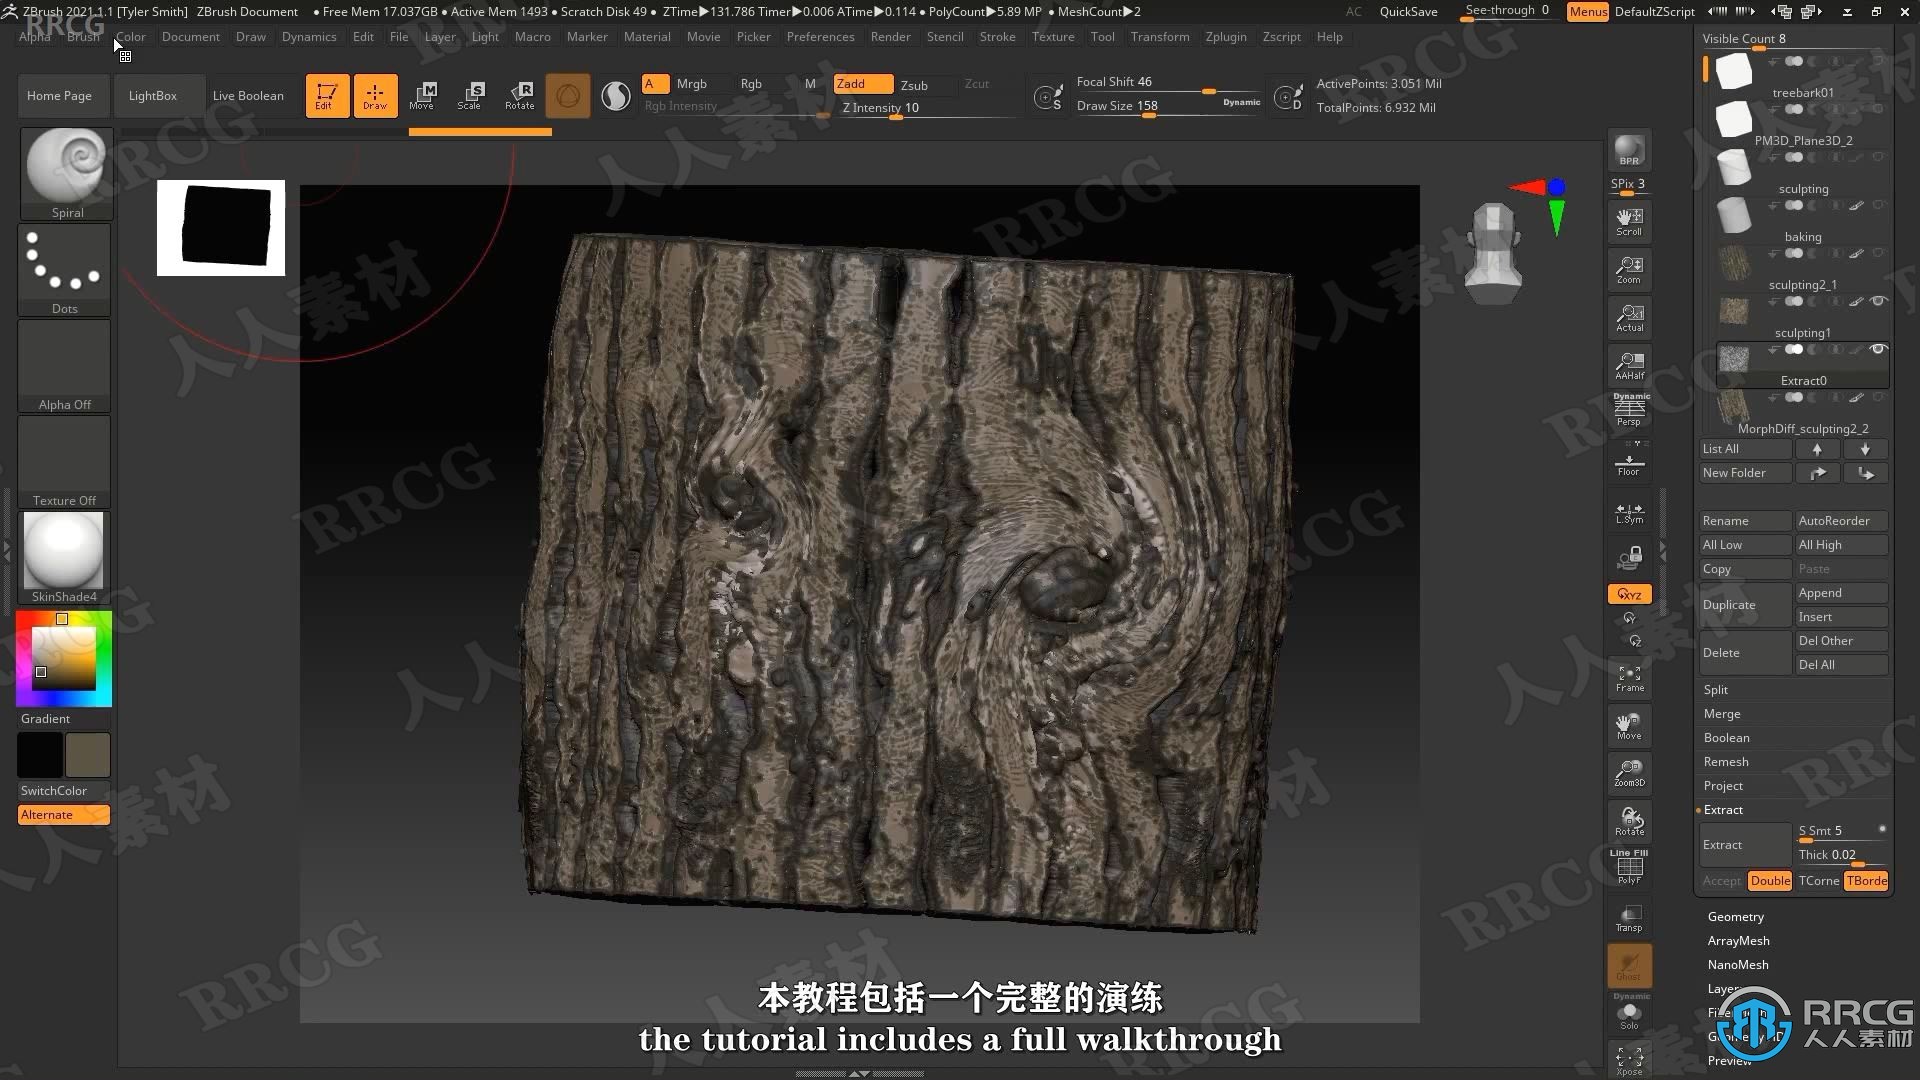 【中文字幕】Zbrush古老苔藓树游戏资产制作全流程视频课程